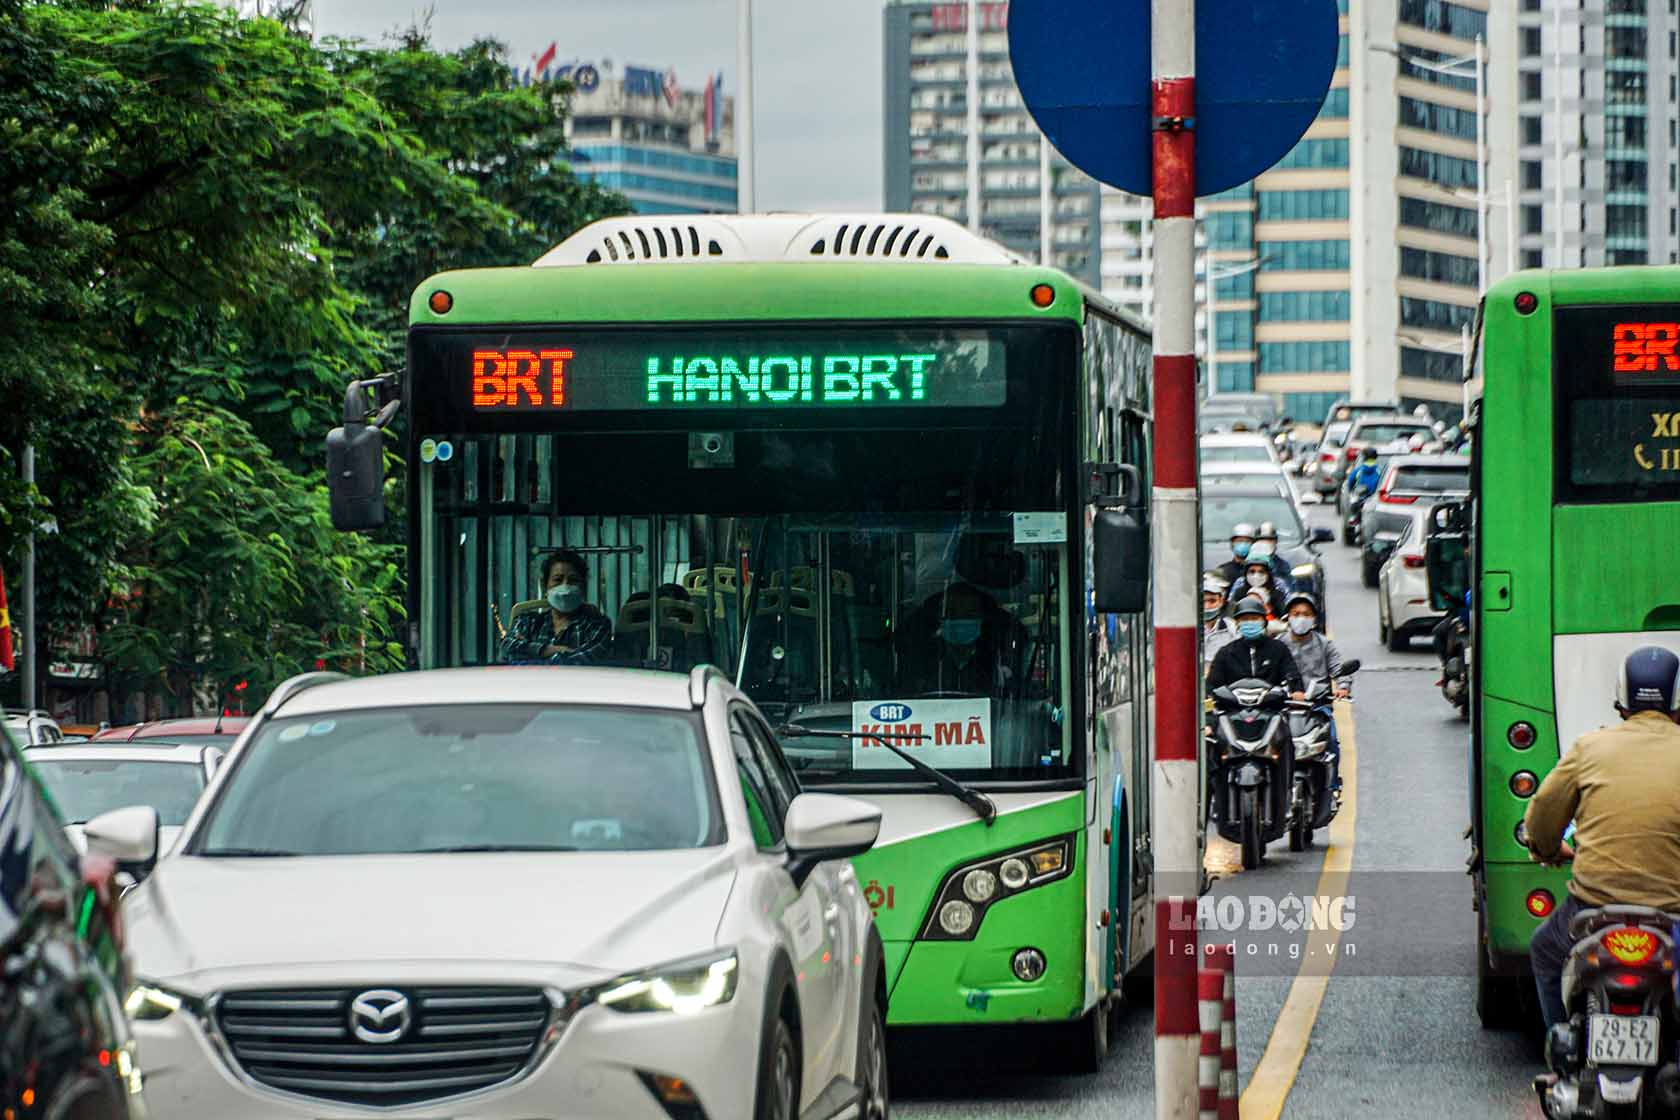 Theo Kế hoạch, giai đoạn từ năm 2022-2025, Ủy ban Nhân dân thành phố Hà Nội đặt mục tiêu phấn đấu tới năm 2025 vận tải hành khách công cộng đáp ứng 30-35% nhu cầu đi lại của người dân.Mục tiêu là vậy, tuy nhiên trên thực tế nhiều năm nay, việc tăng trưởng tỉ lệ đáp ứng nhu cầu đi lại của hành khách bằng vận tải hành khách công cộng, đặc biệt là xe buýt vẫn chỉ xấp xỉ 15 - 16%. Điều này ảnh hưởng không nhỏ đến kế hoạch hạn chế phương tiện cá nhân của thành phố.